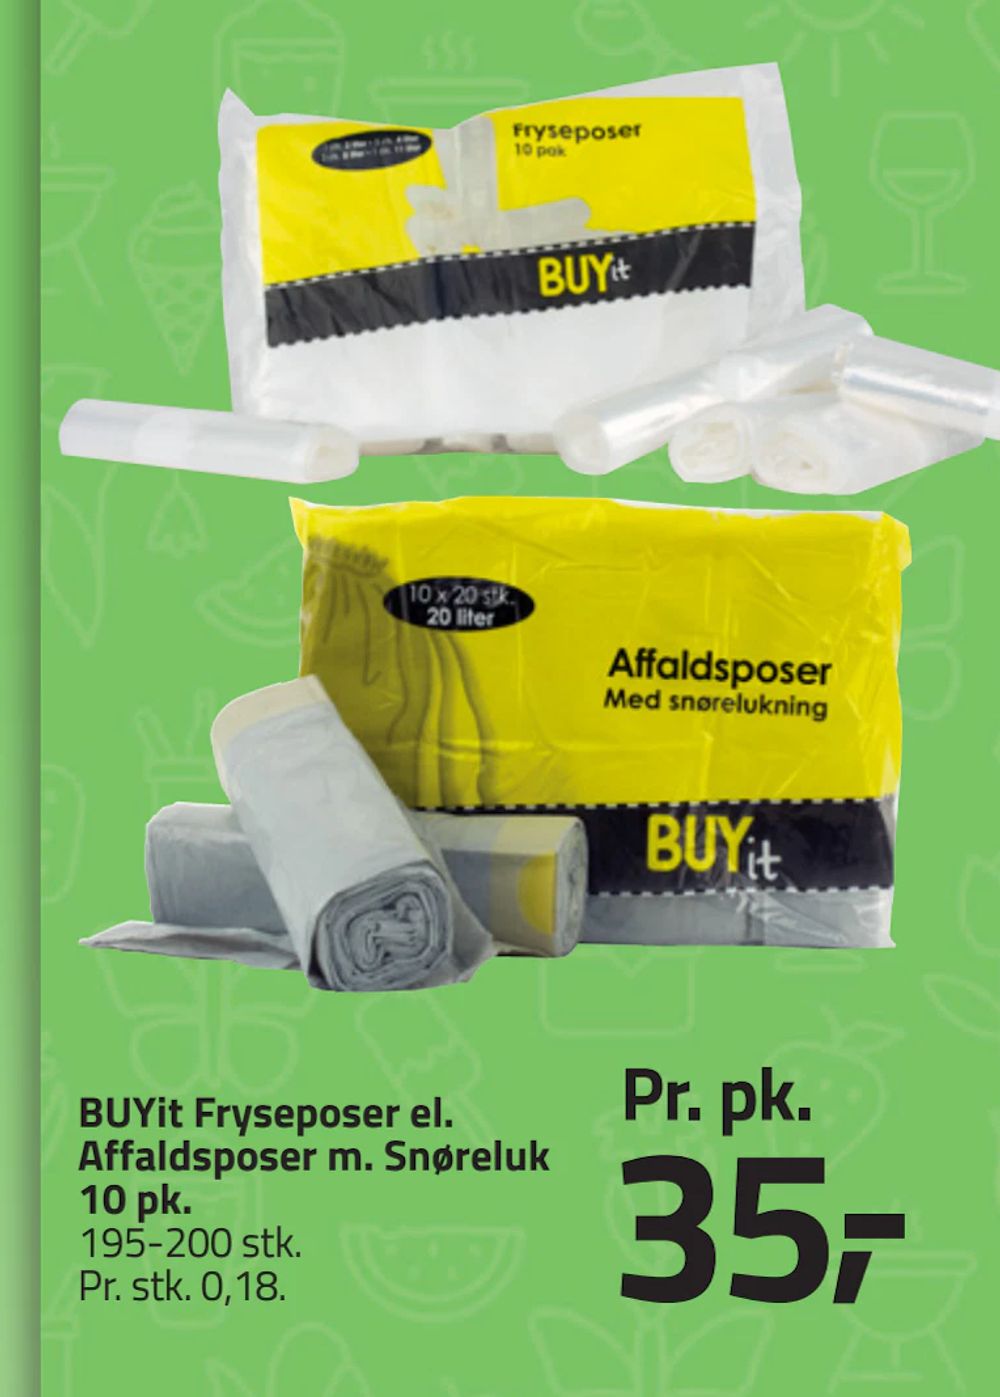 Tilbud på BUYit Fryseposer el. Affaldsposer m. Snøreluk 10 pk fra Fleggaard til 35 kr.